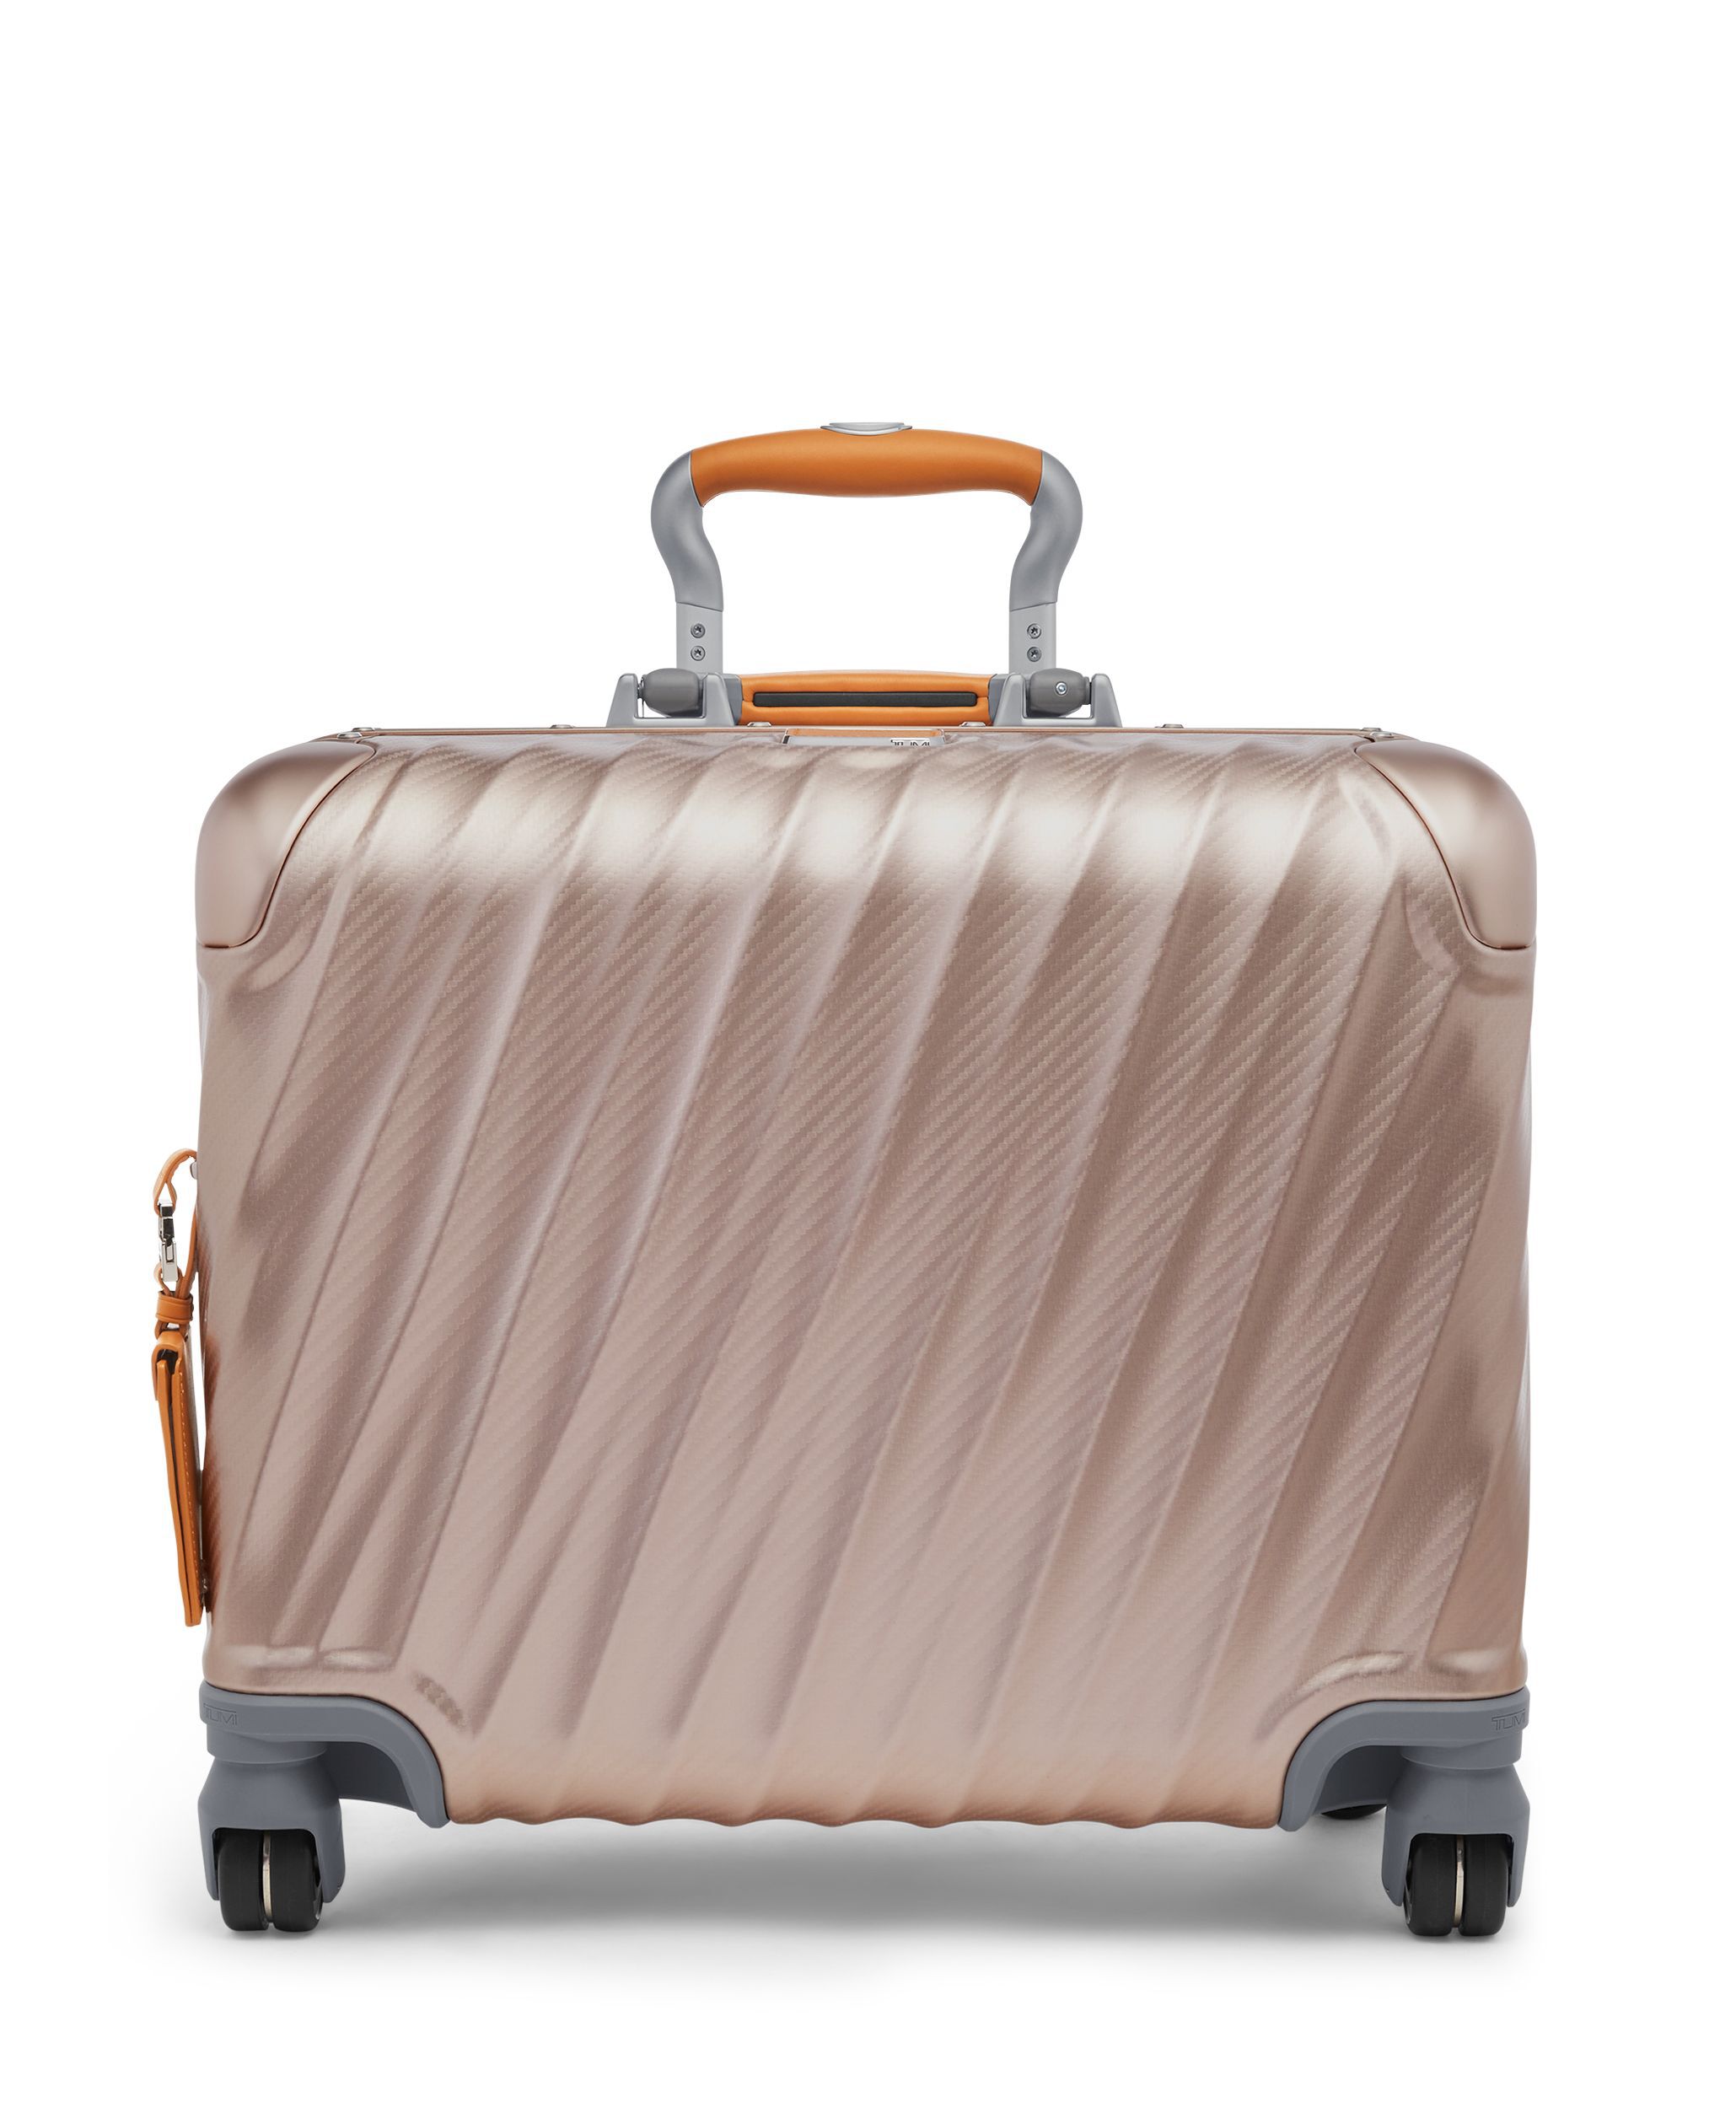 TUMI 大型スーツケース